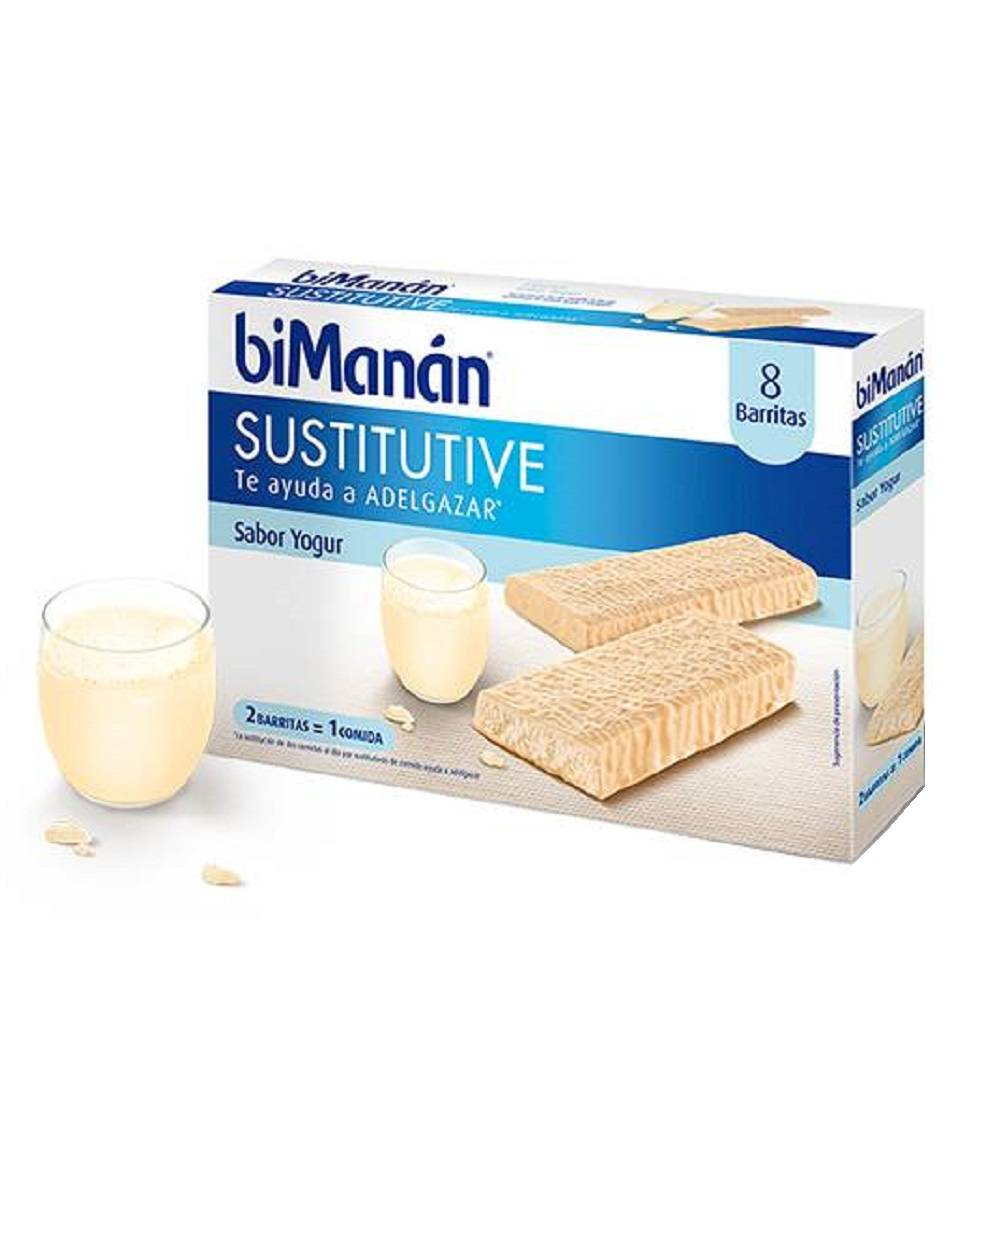 Bimanan Sustitutive Barritas yogurt 8 unds